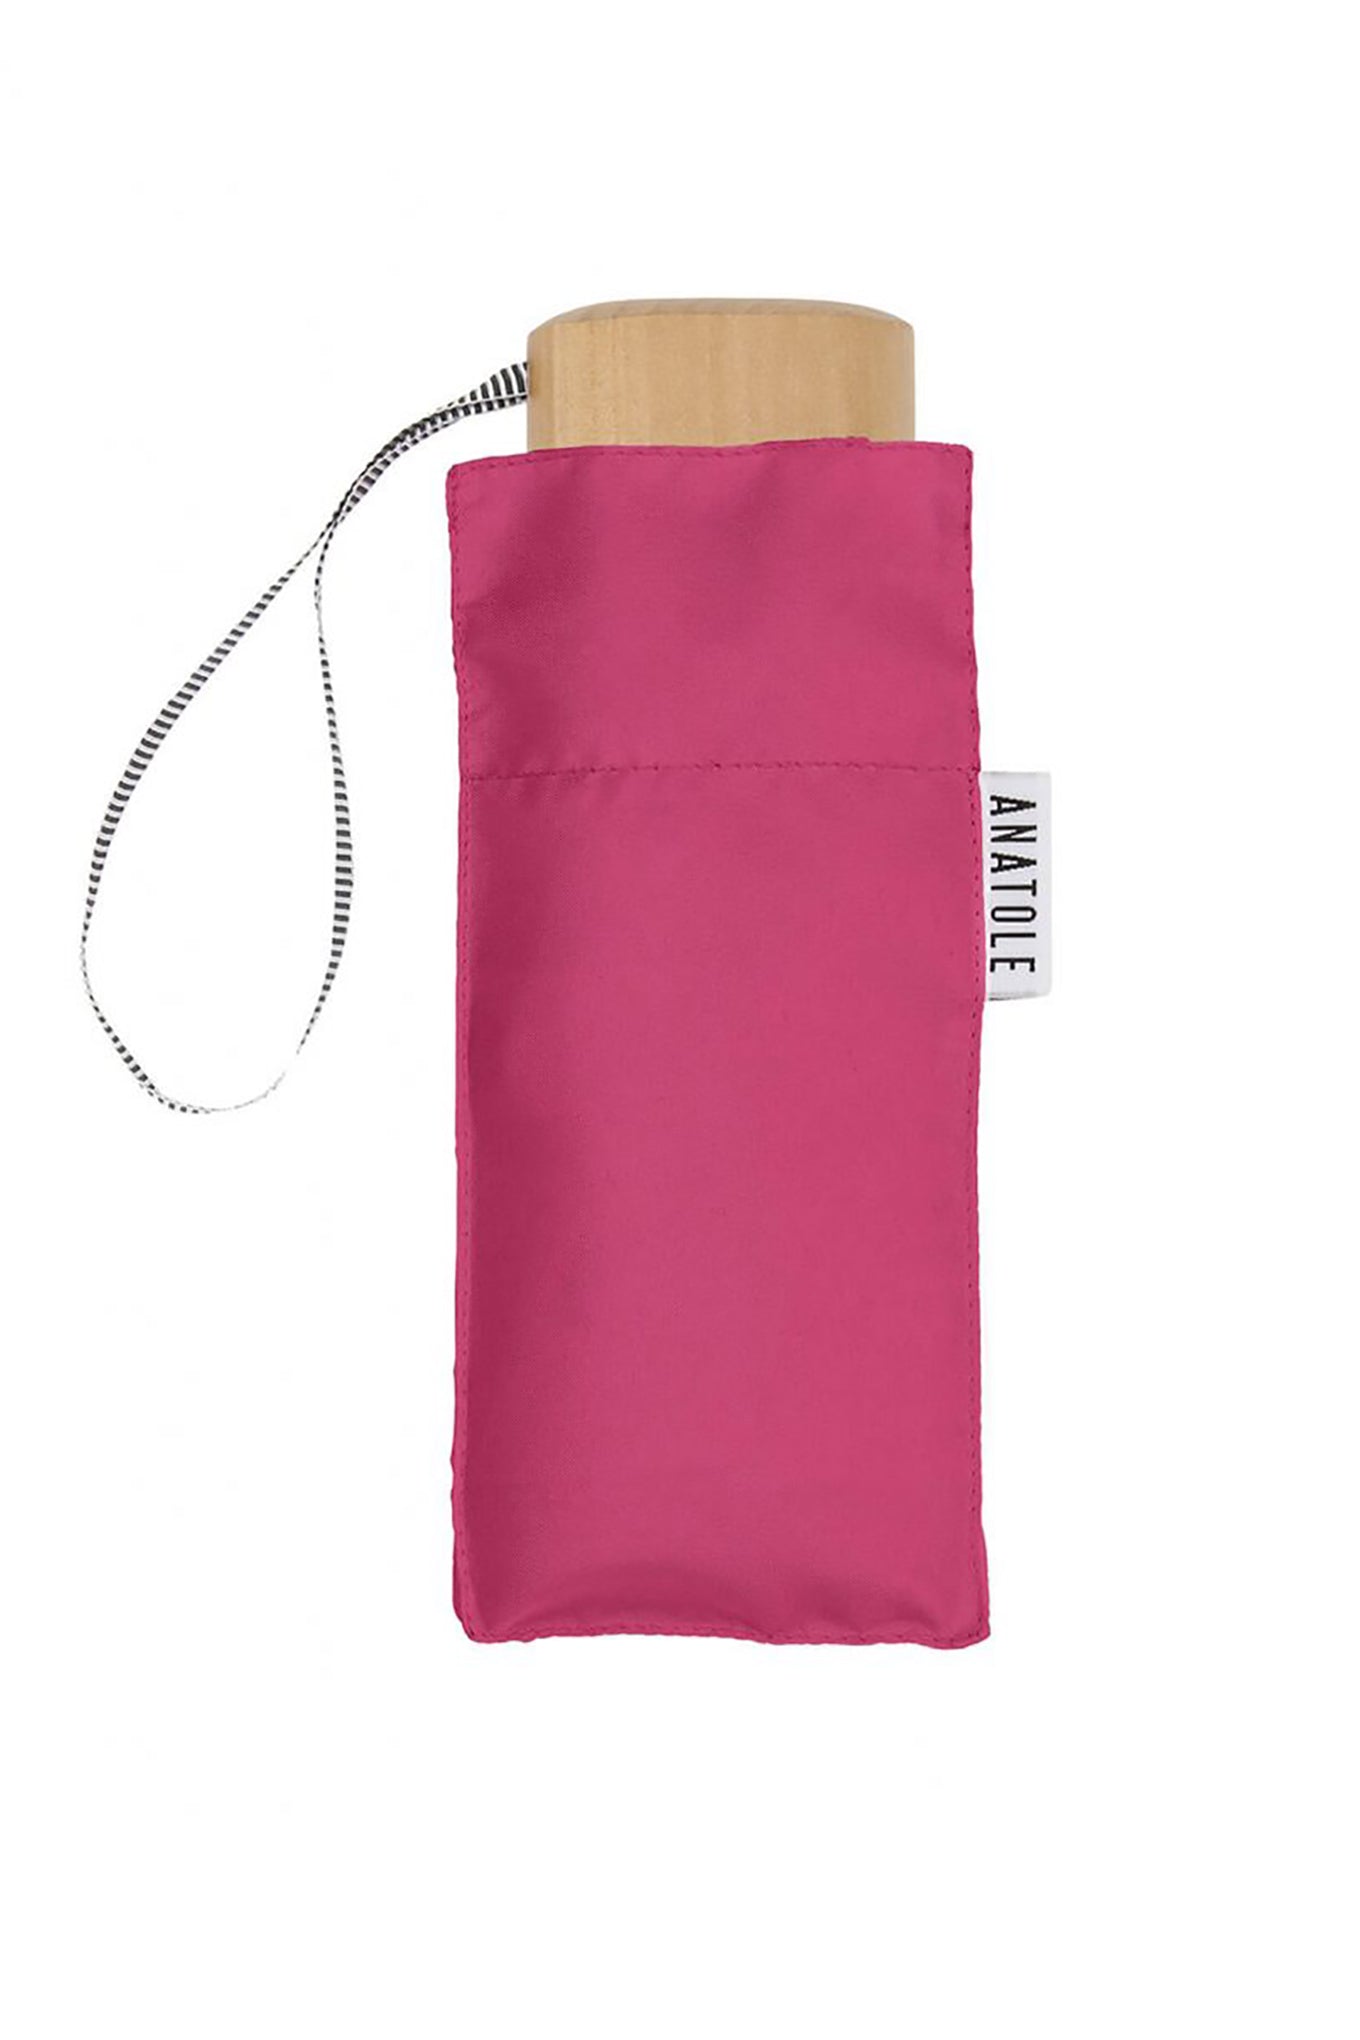 Anatole folding micro-umbrella - Suzanne pink